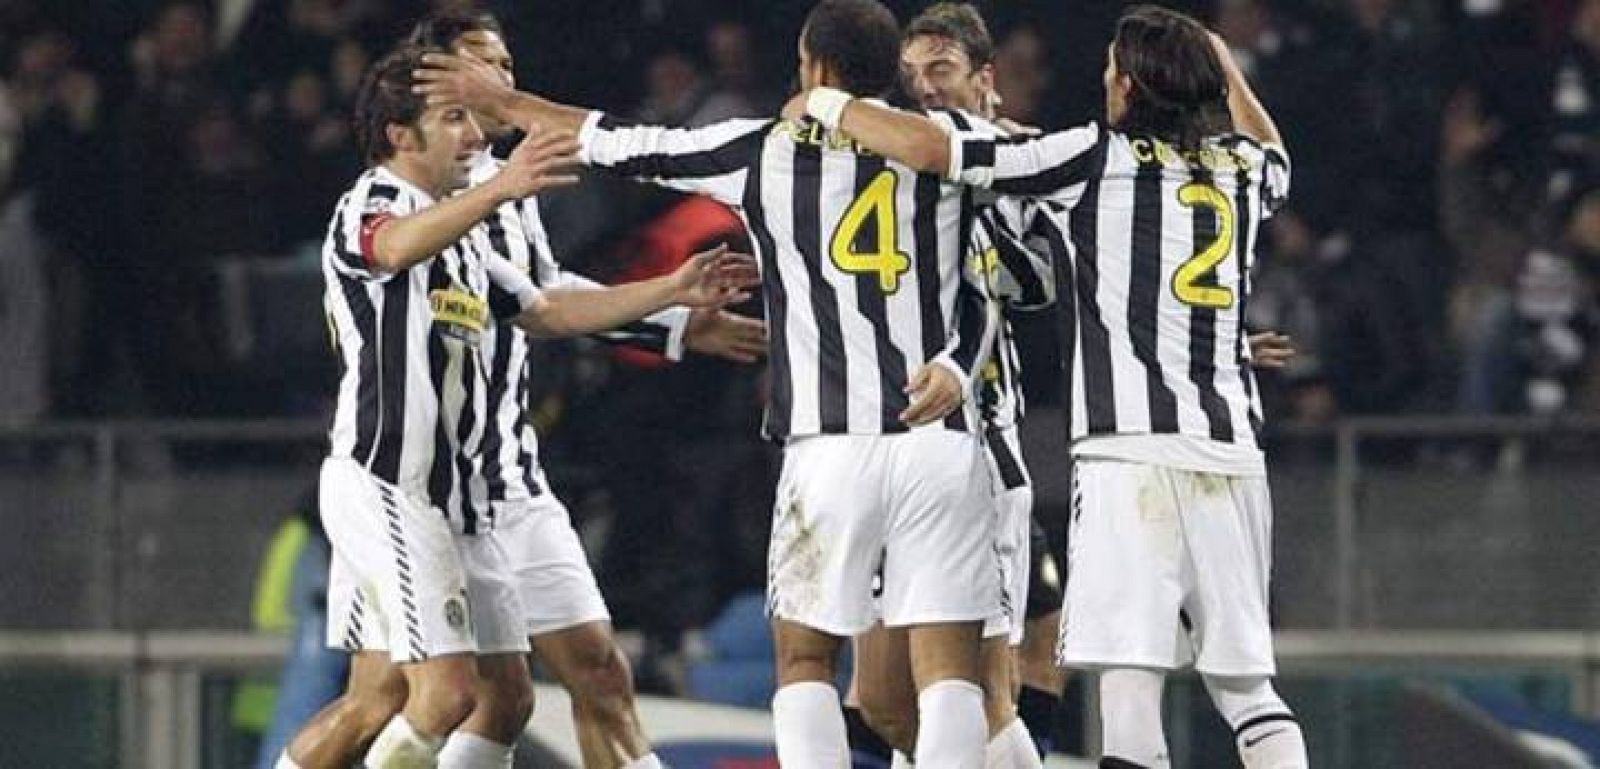 La Juventus afronta el partido reforzada tras su victoria liguera ante el Inter.